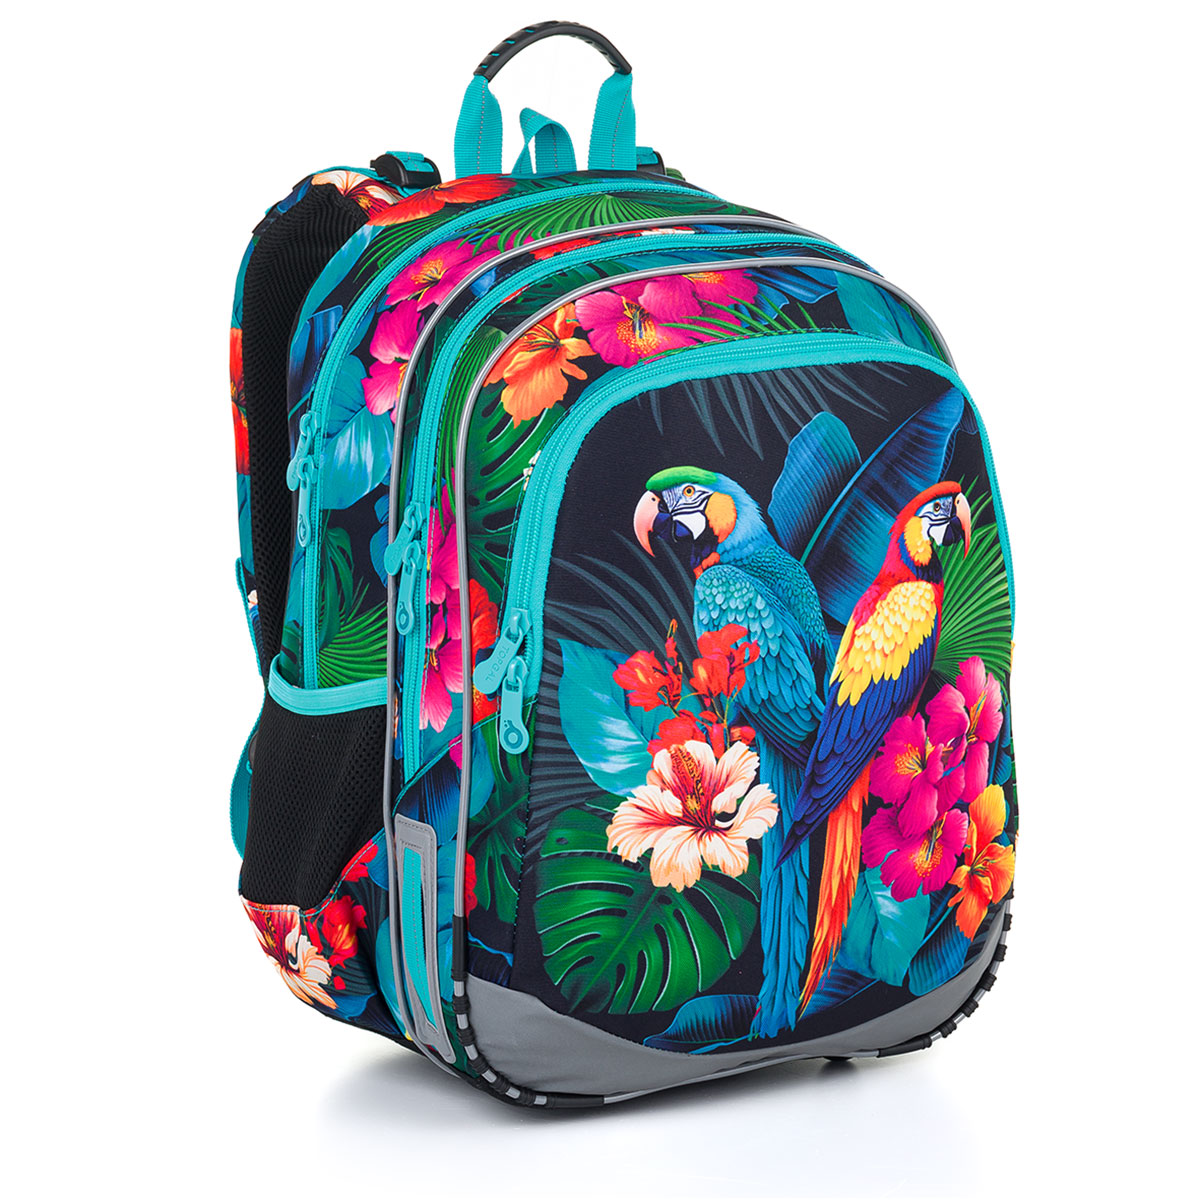  Školní batoh TOPGAL ELLY 24004 s papoušky Ara